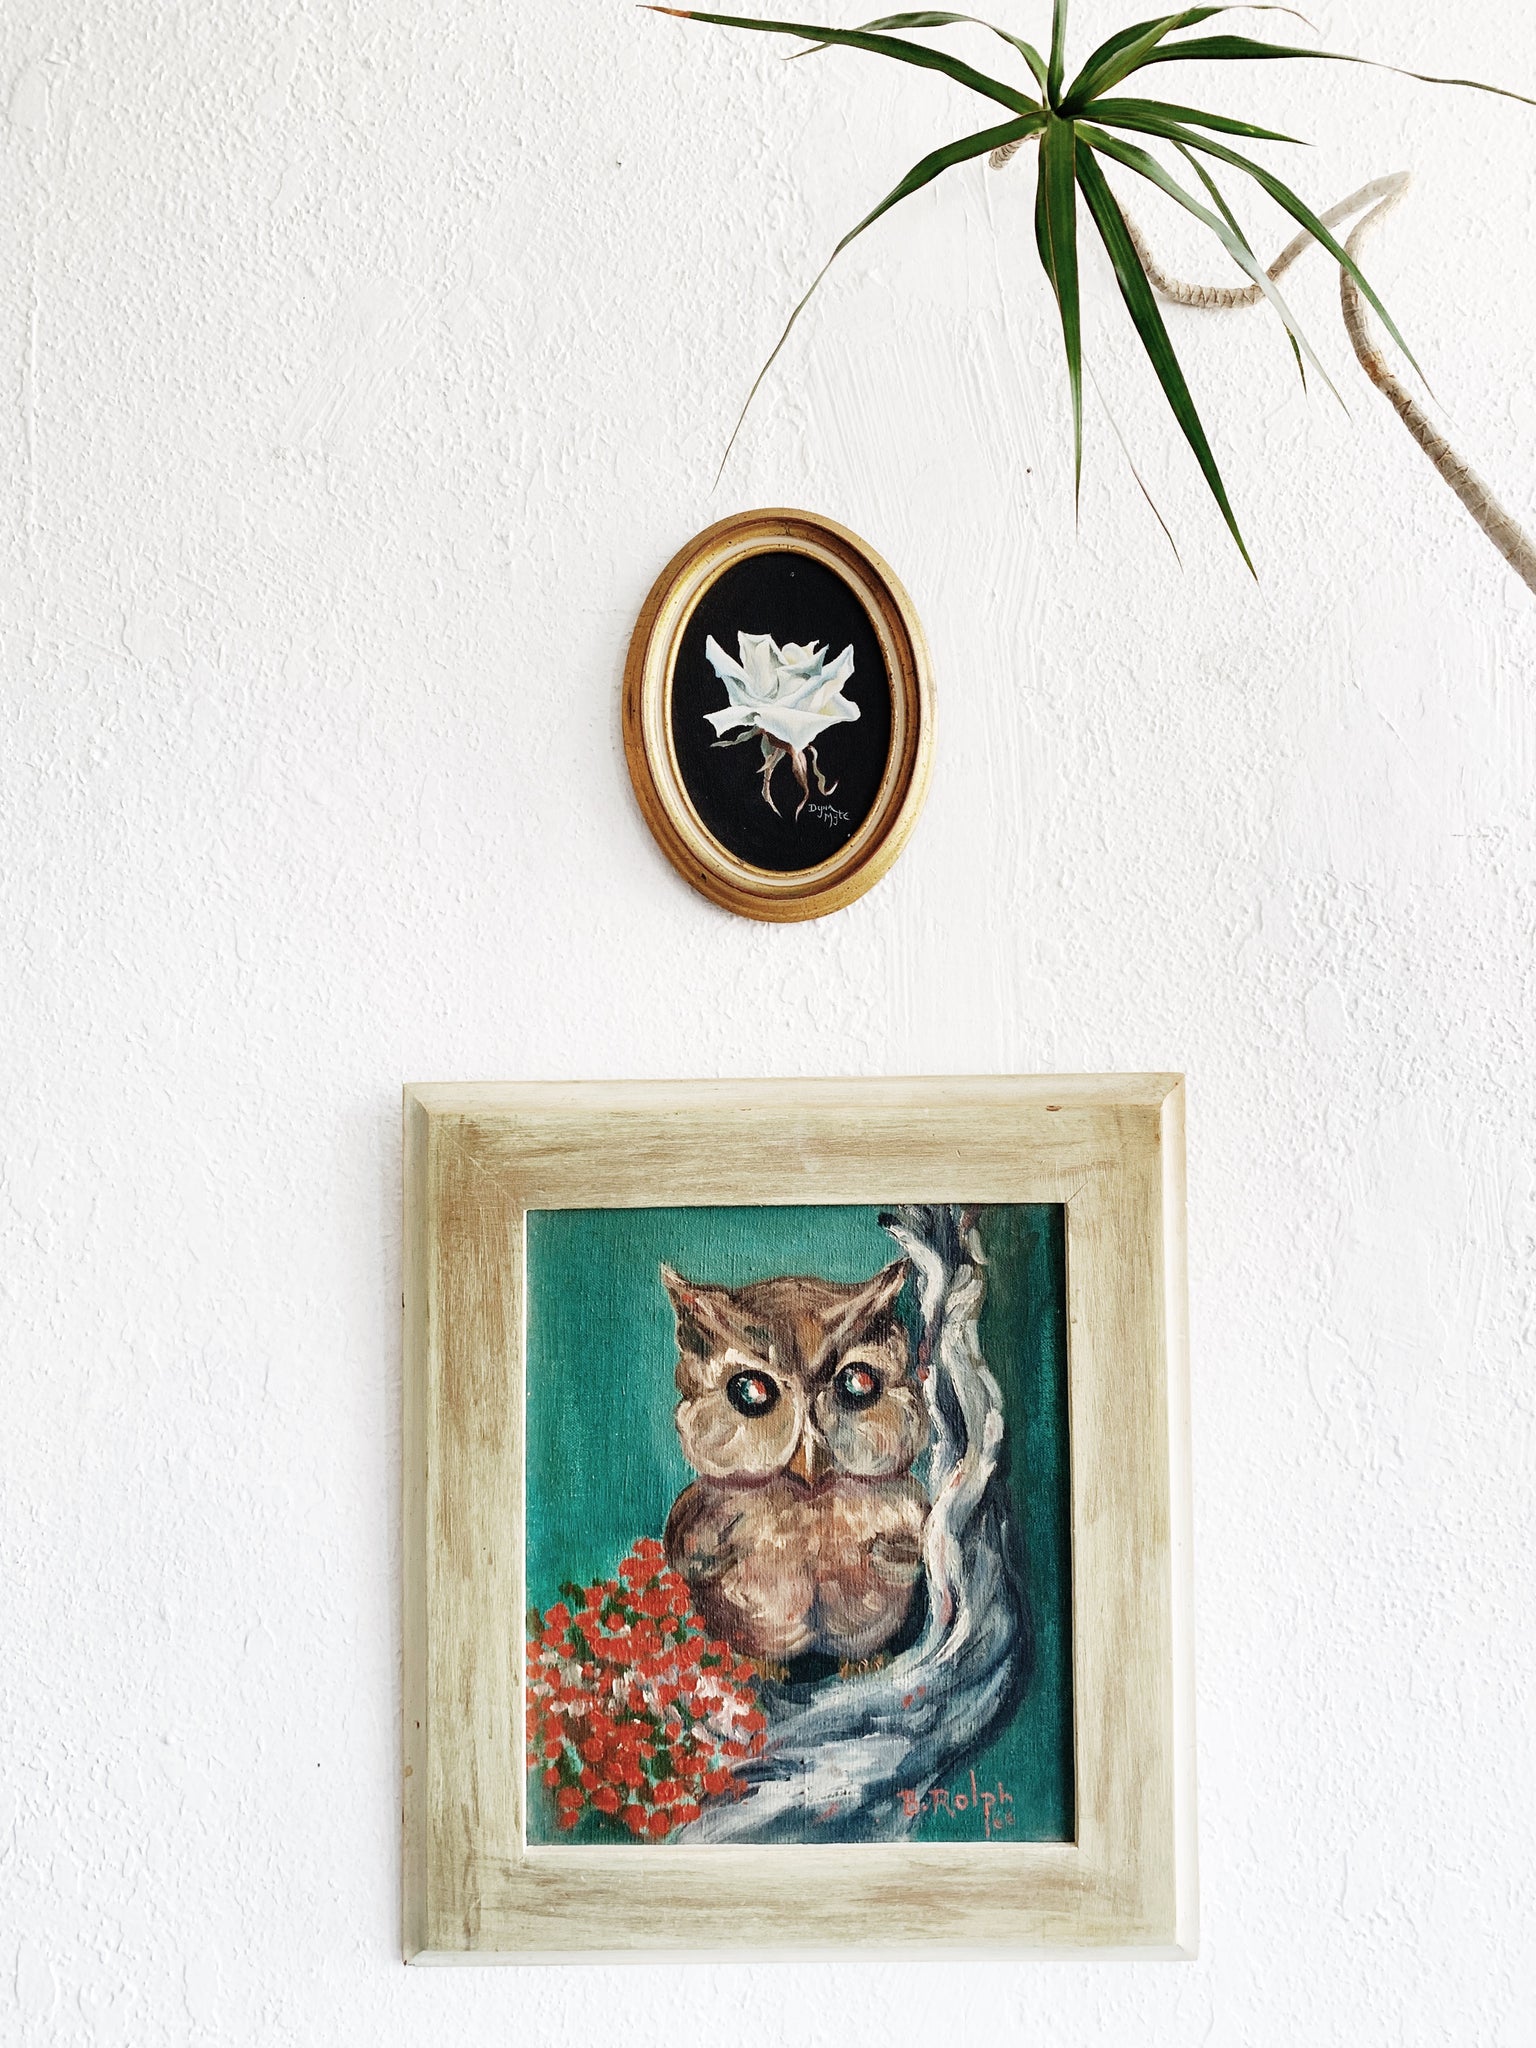 Vintage Framed Owl Painting